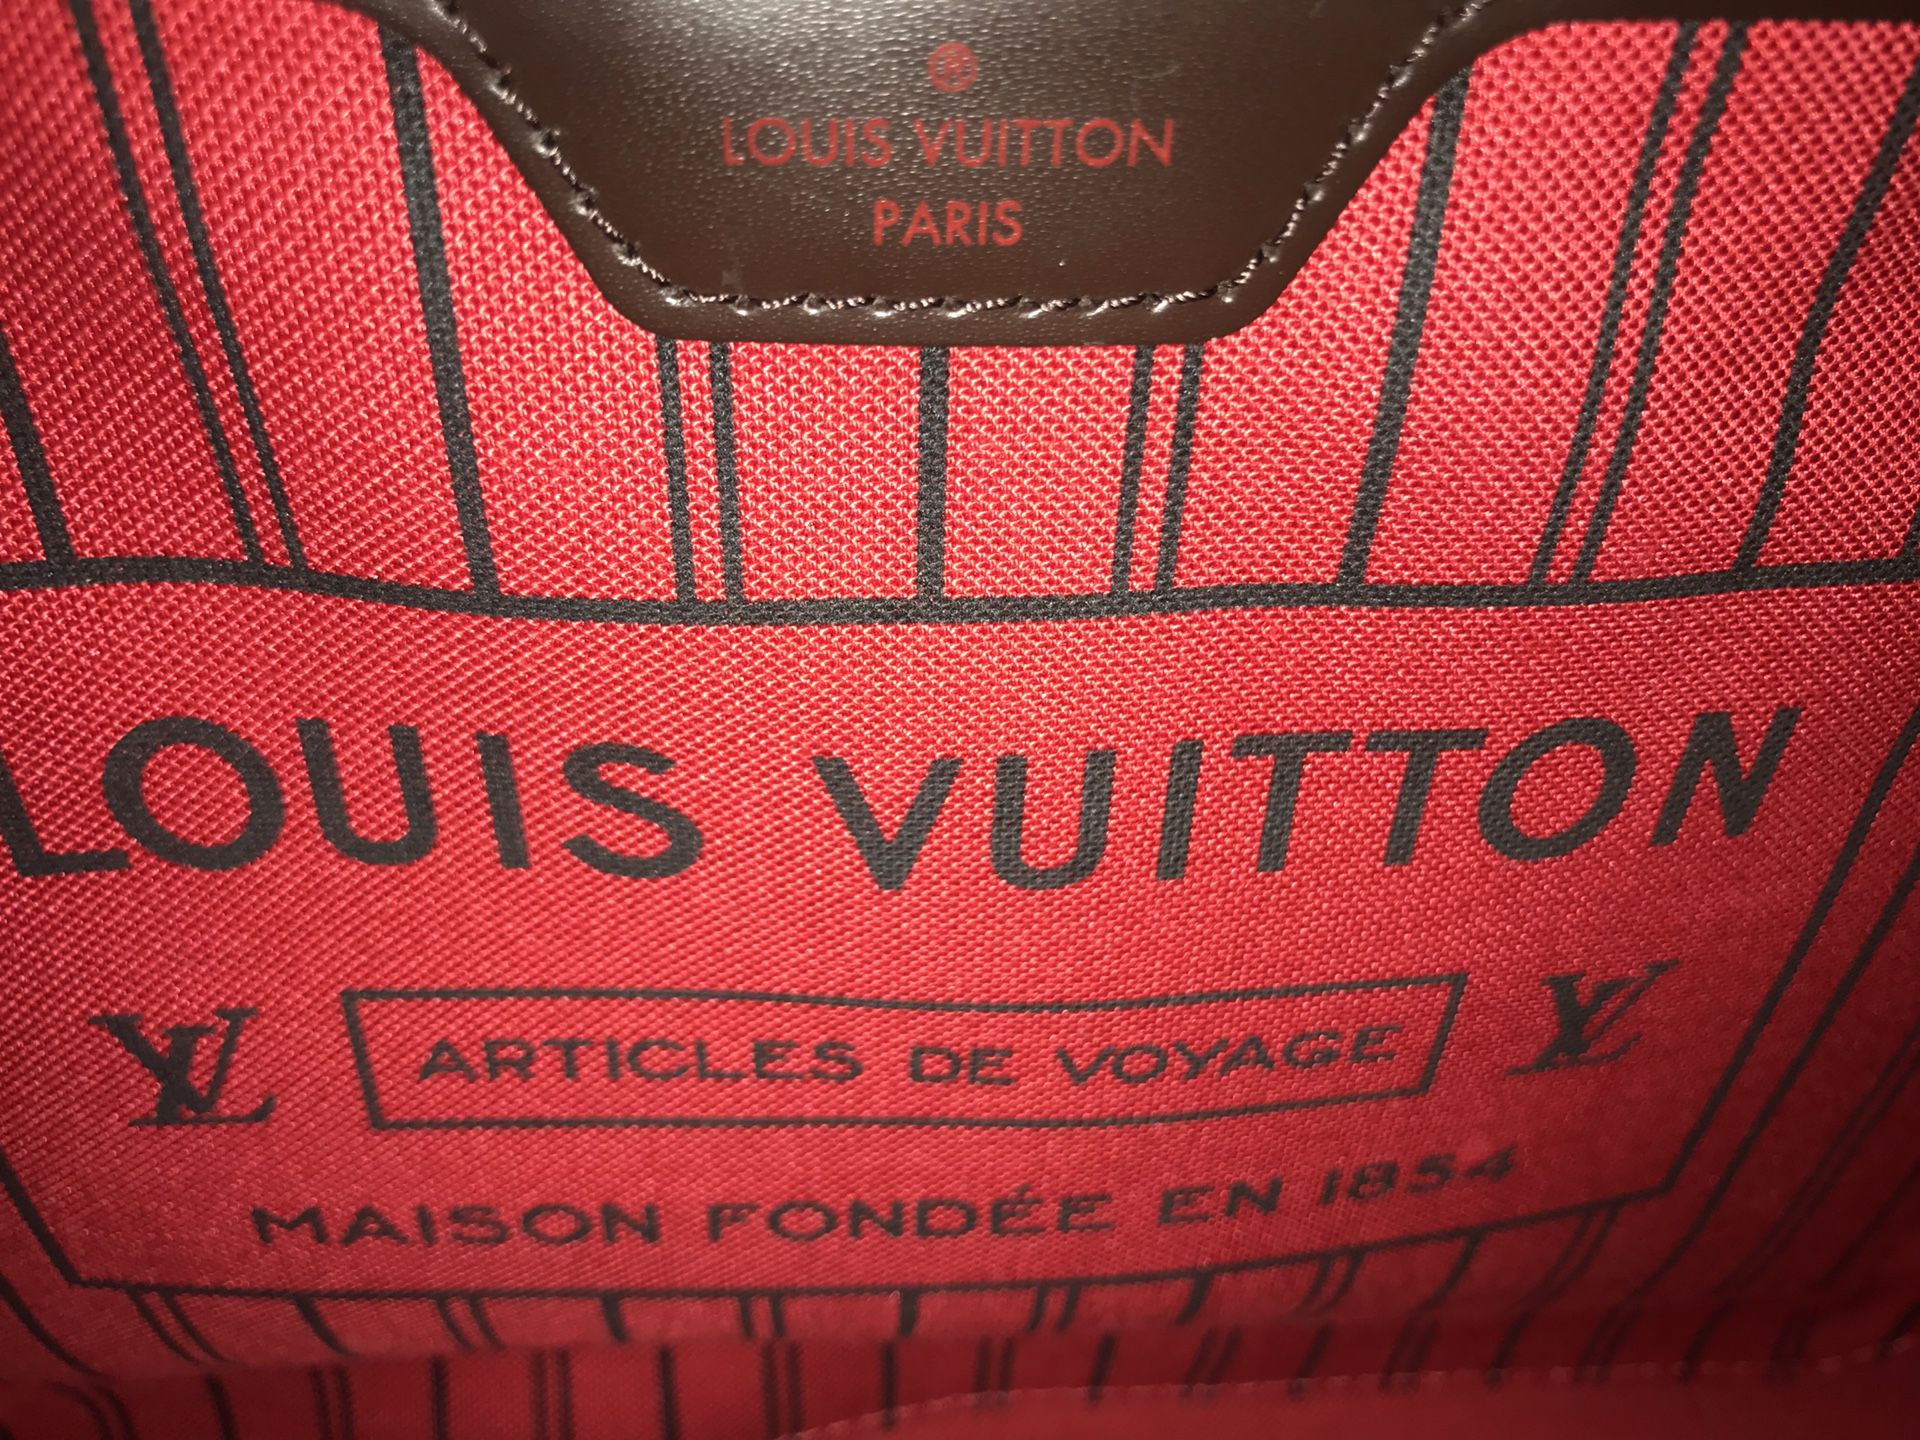 Vintage Louis Vuitton Speedy for Sale in Riviera Beach, FL - OfferUp